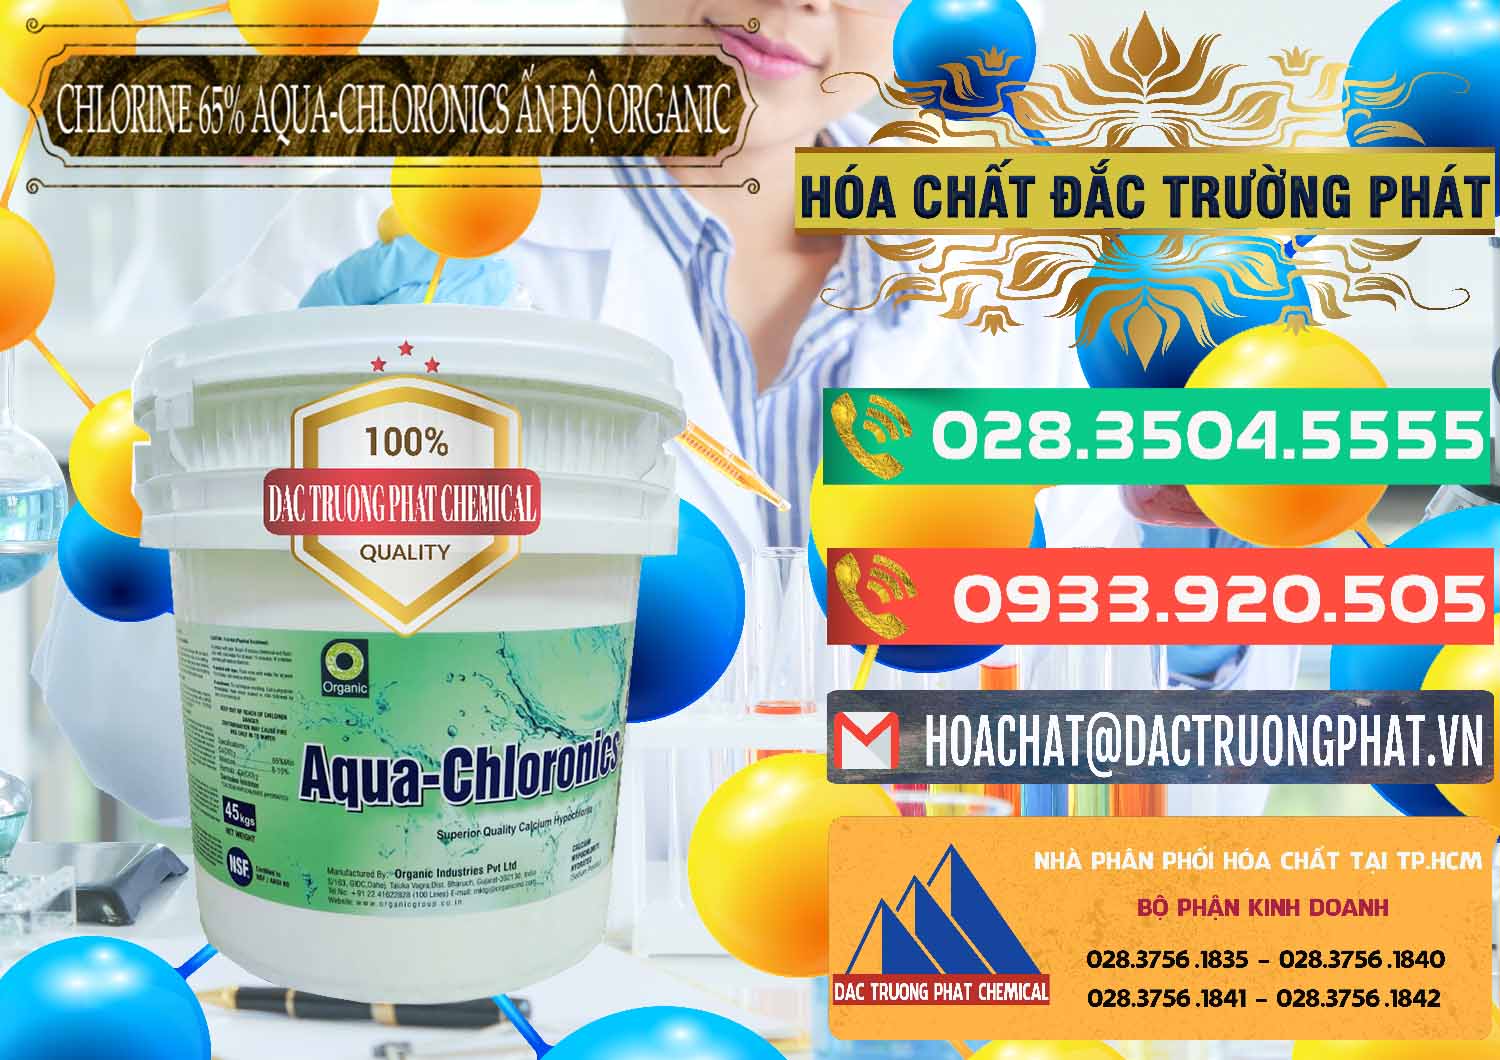 Đơn vị bán _ cung ứng Chlorine – Clorin 65% Aqua-Chloronics Ấn Độ Organic India - 0210 - Nơi chuyên phân phối & cung ứng hóa chất tại TP.HCM - congtyhoachat.com.vn